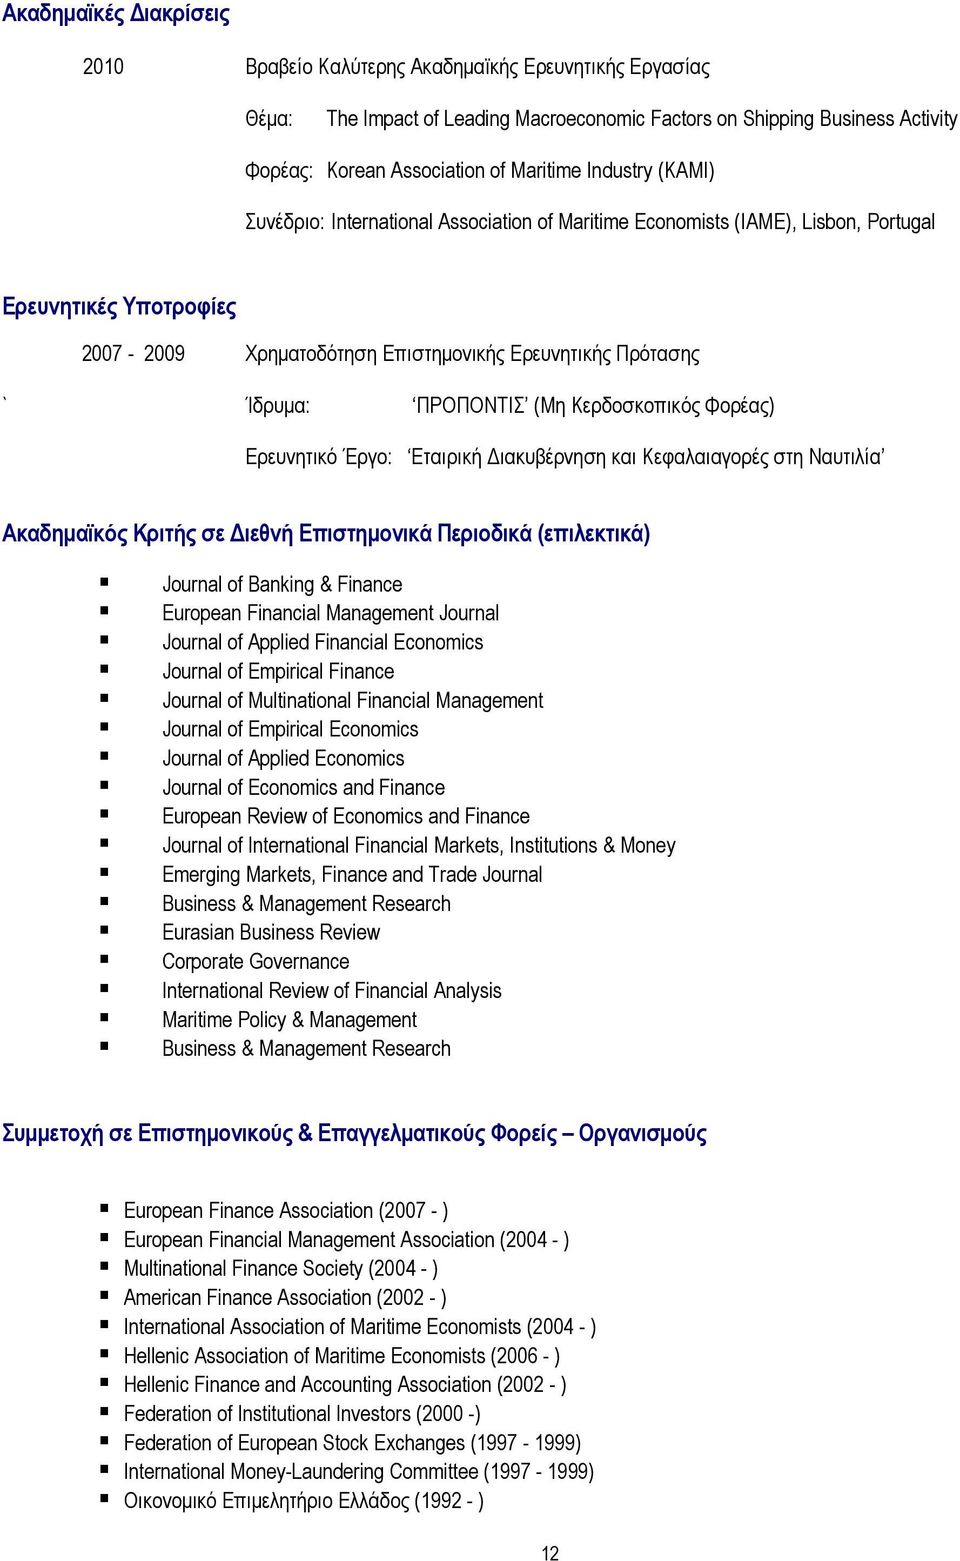 ΠΡΟΠΟΝΤΙΣ (Μη Κερδοσκοπικός Φορέας) Ερευνητικό Έργο: Εταιρική ιακυβέρνηση και Κεφαλαιαγορές στη Ναυτιλία Ακαδηµαϊκός Κριτής σε ιεθνή Επιστηµονικά Περιοδικά (επιλεκτικά) Journal of Banking & Finance